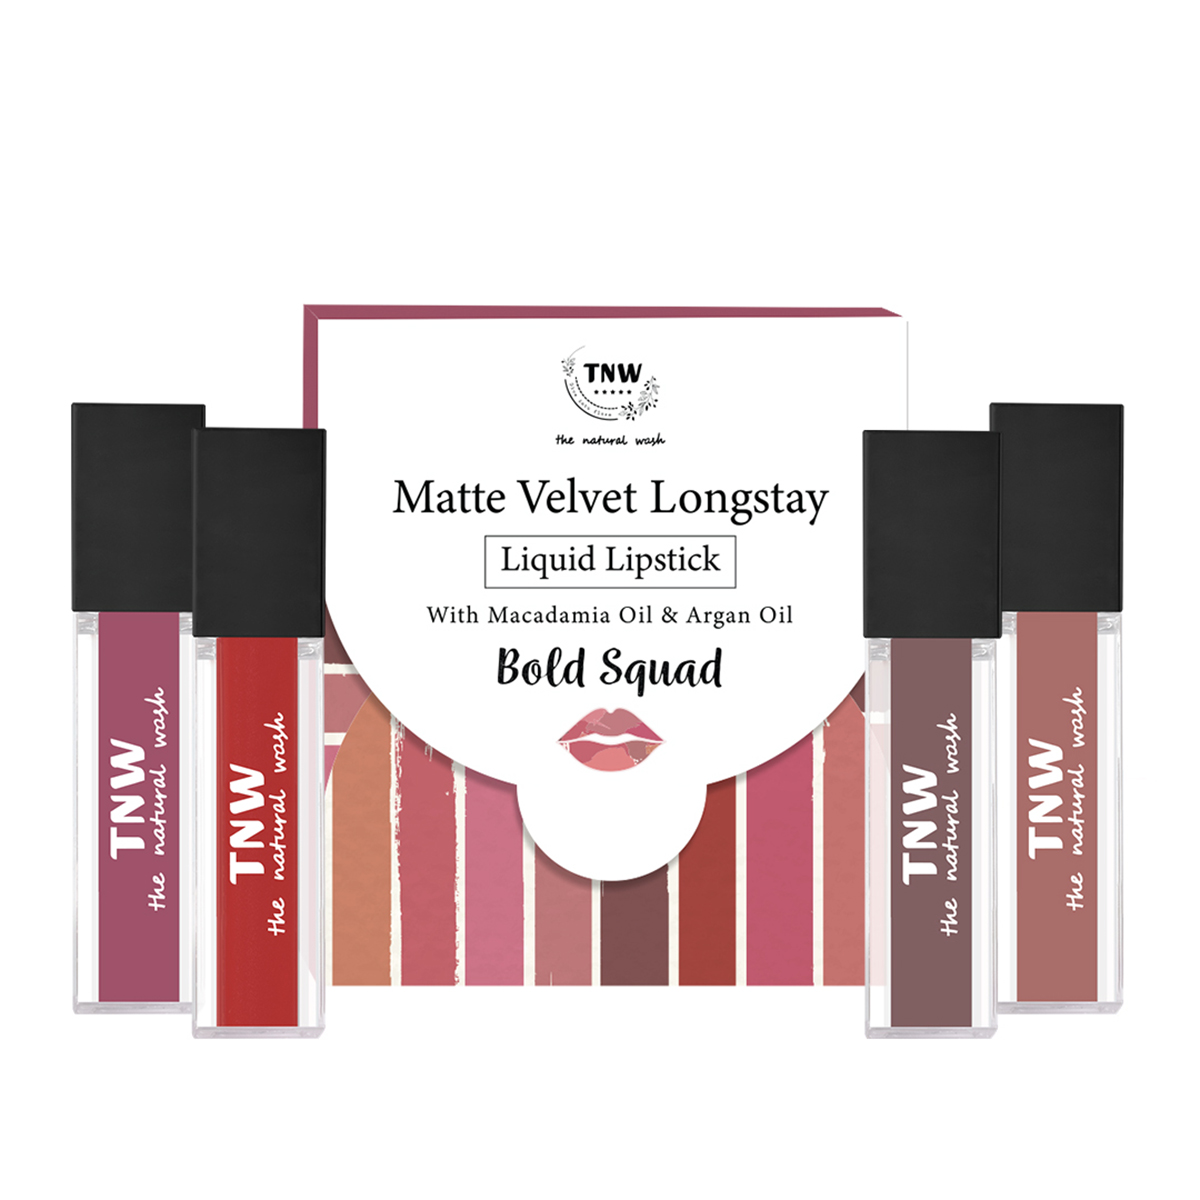 TNW - The Natural Wash Matte Velvet Longstay Liquid Lipstick Mini - Bold Squad, 4.8ml